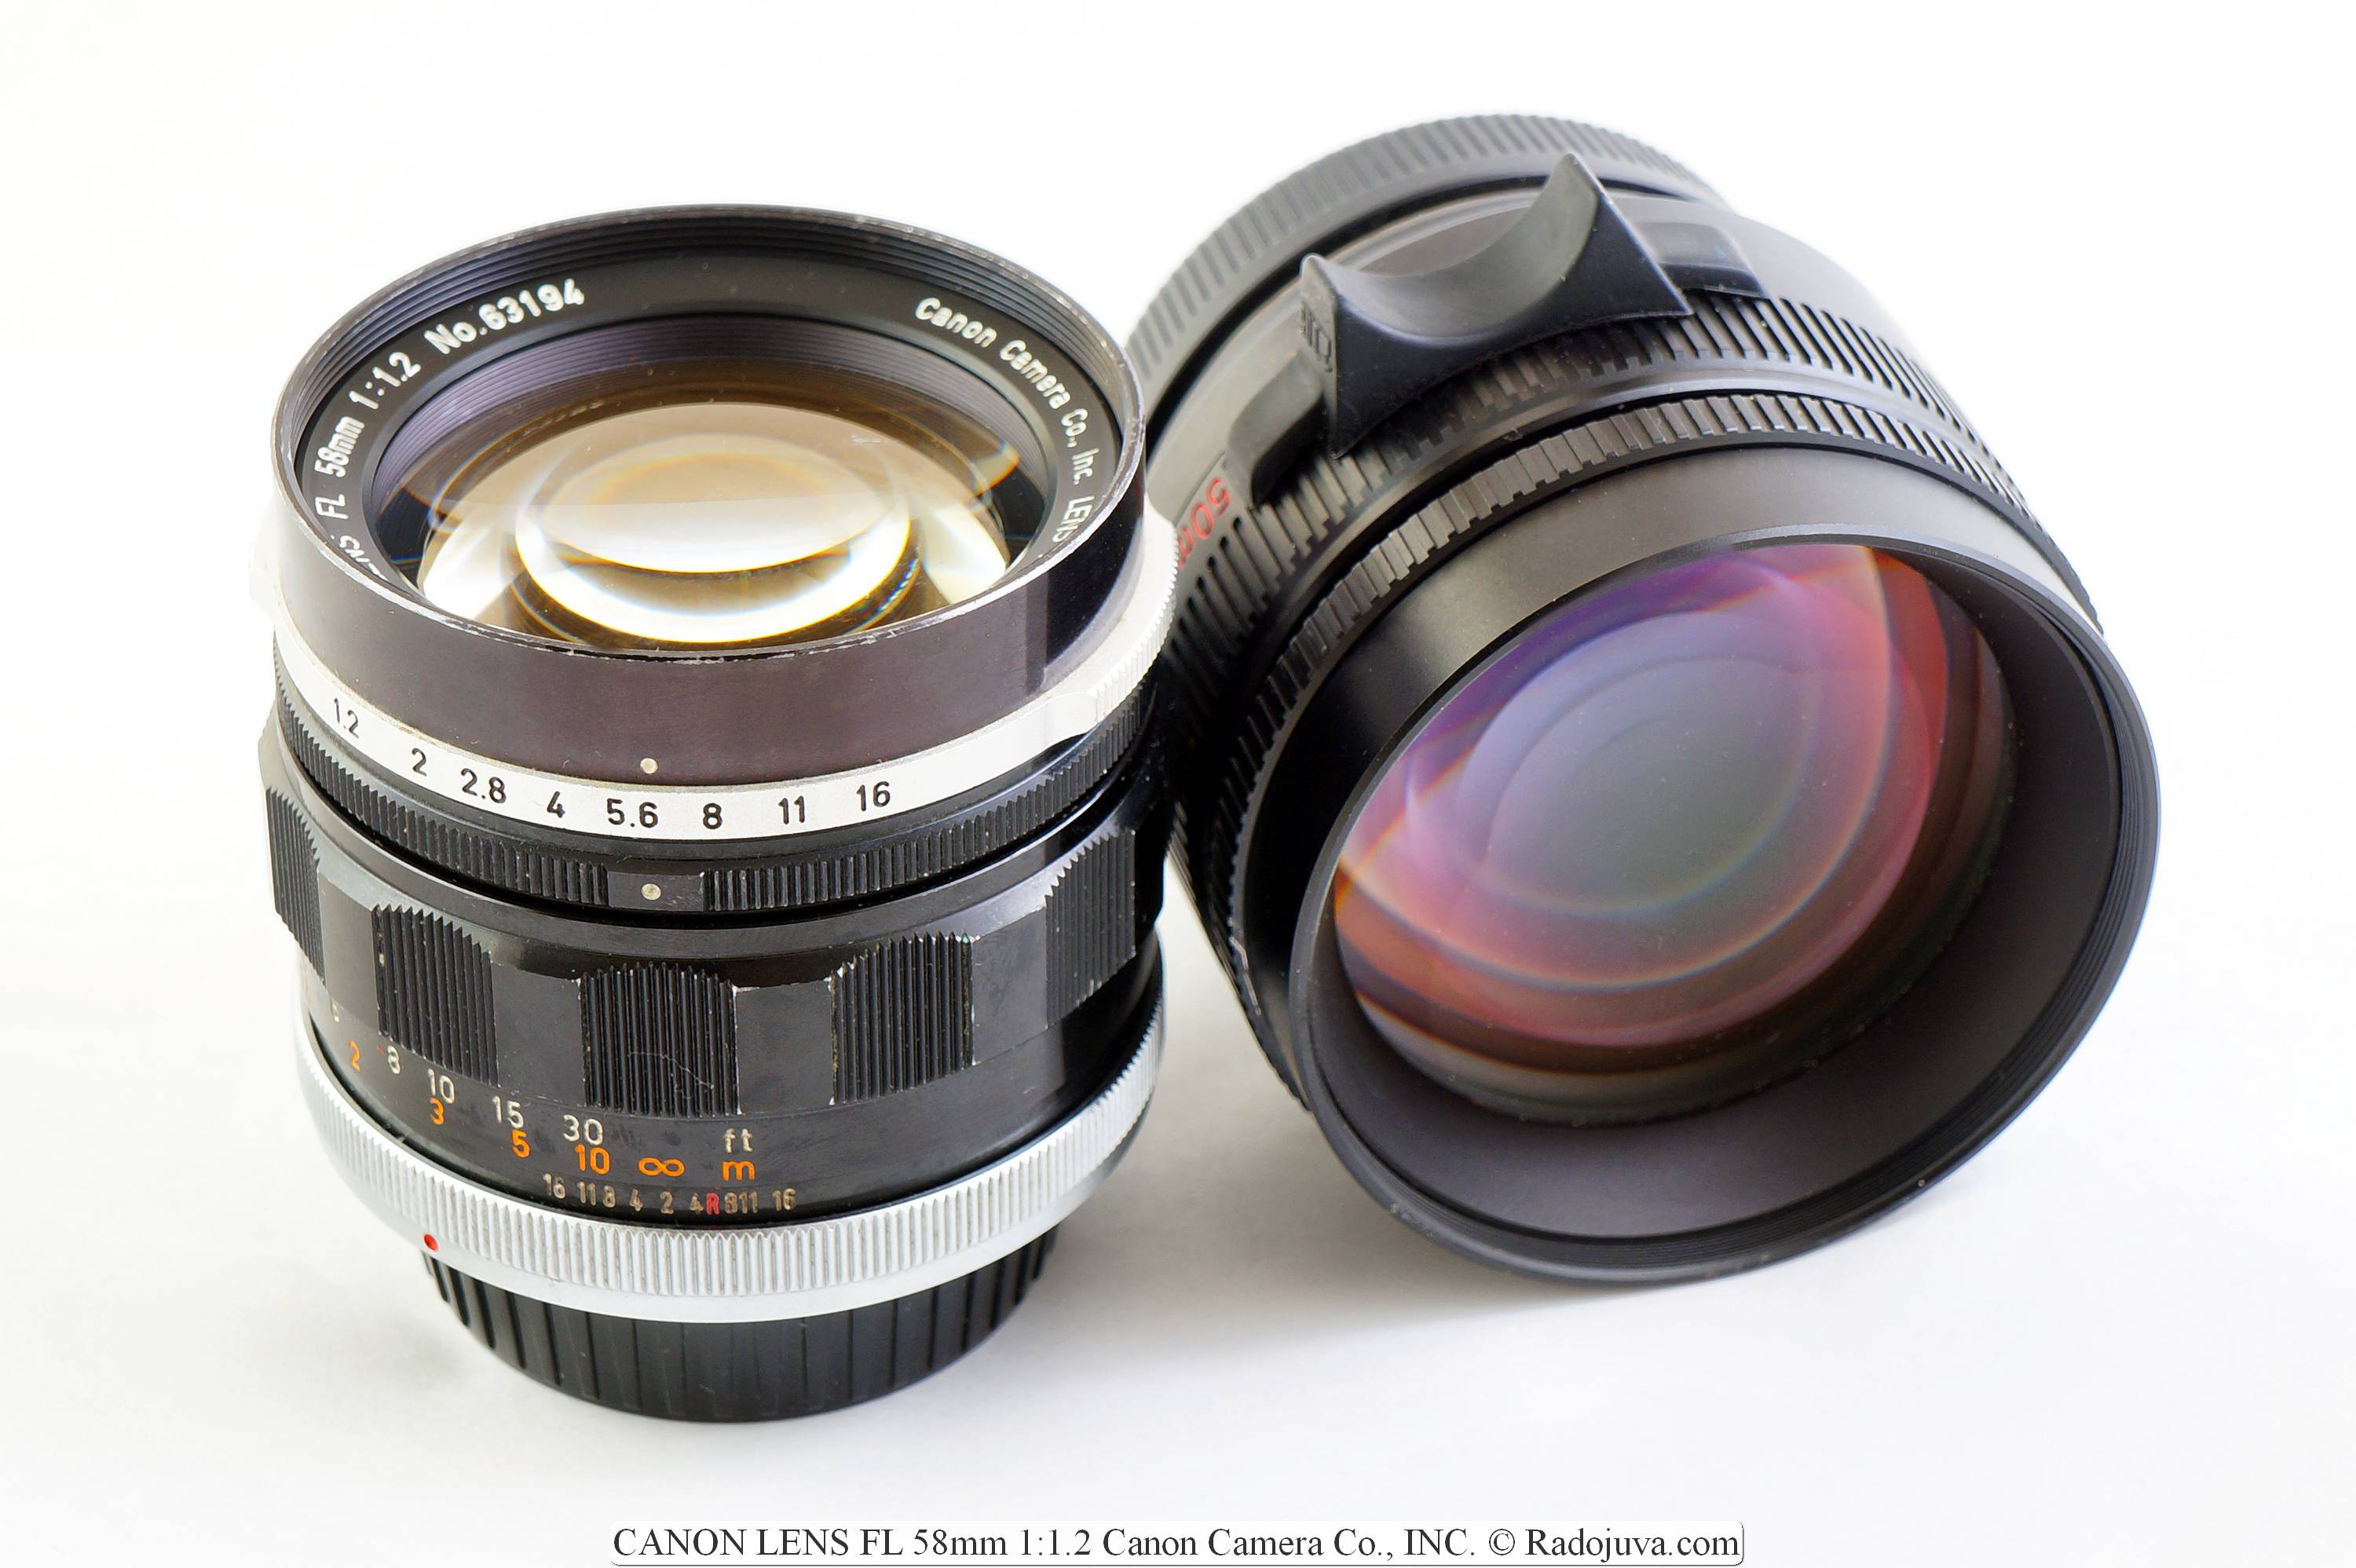 CANON LENS FL 58mm 1:1.2 Canon Camera Co., INC.